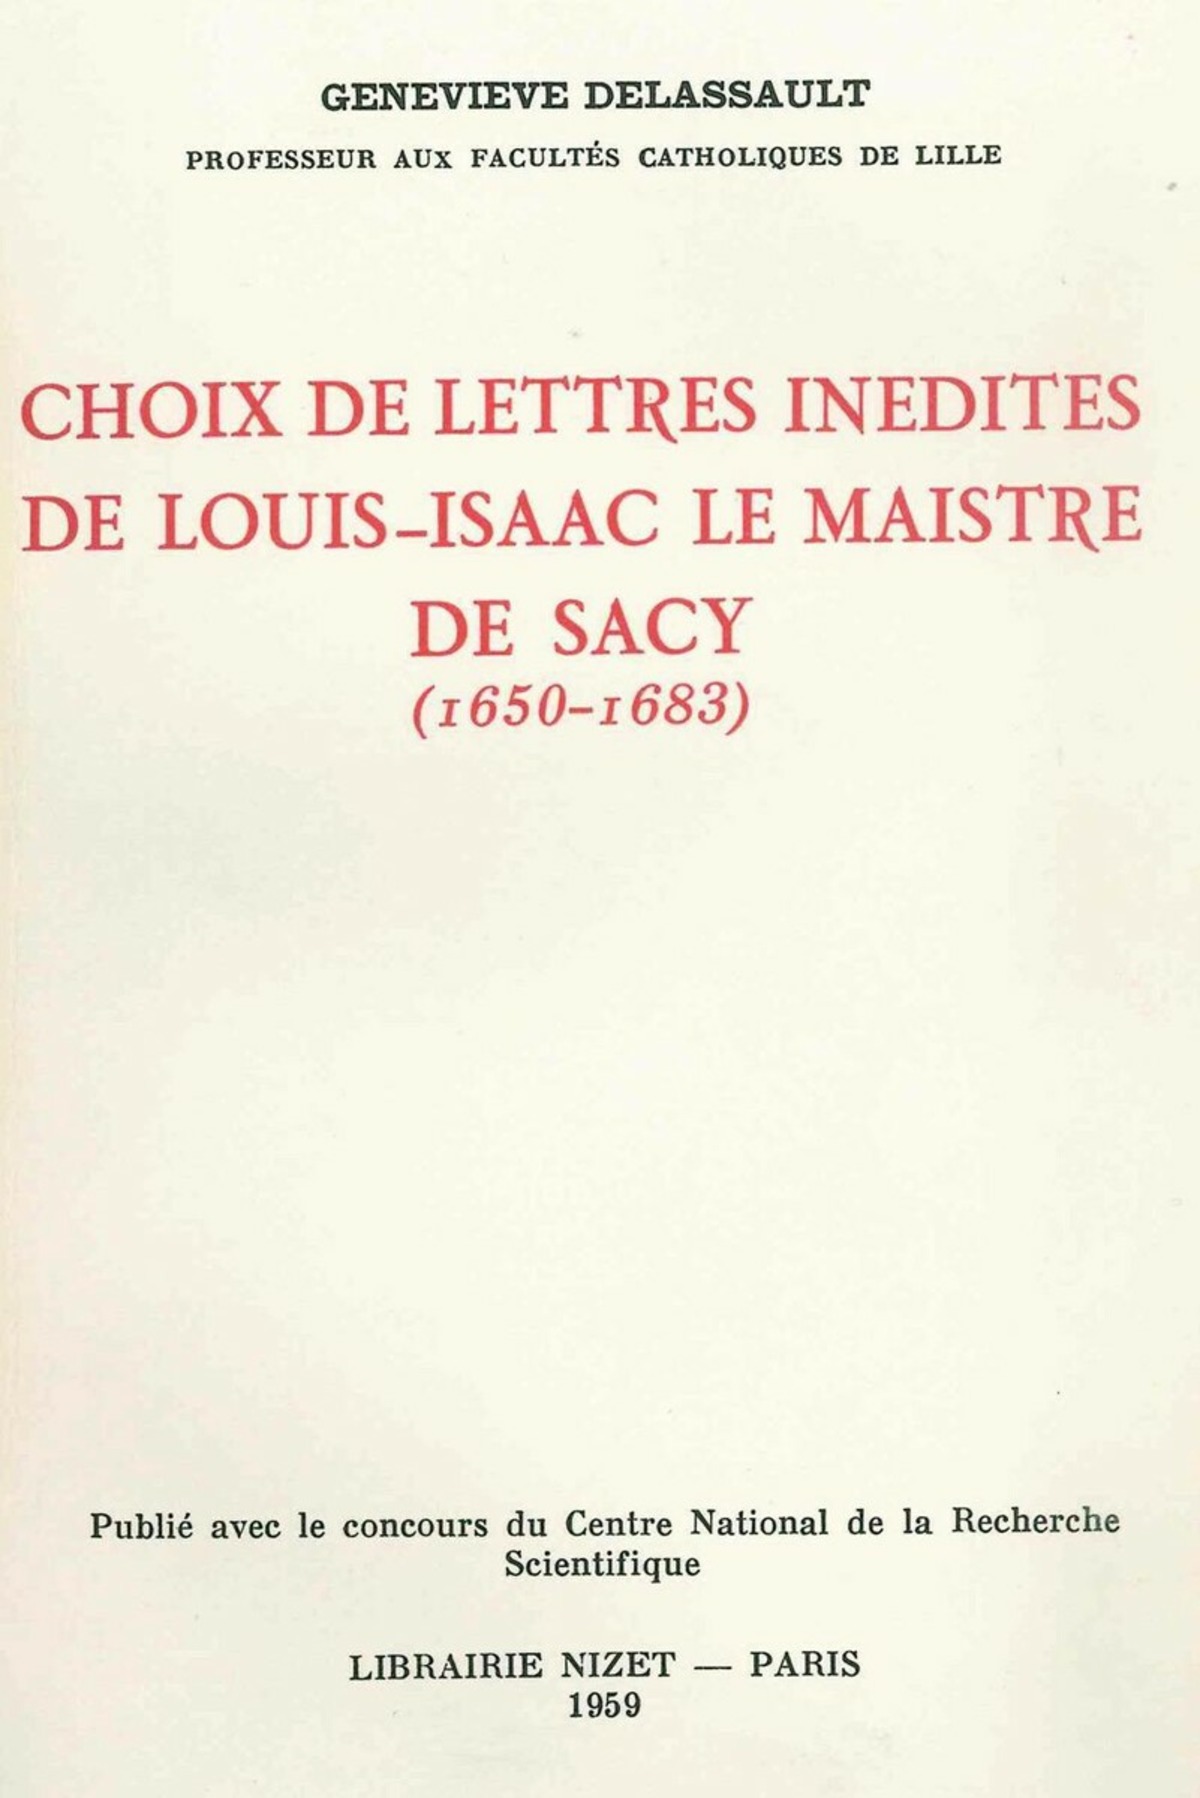 Choix de lettres inédites de Louis-Isaac Le Maistre de Sacy (1650-1683)